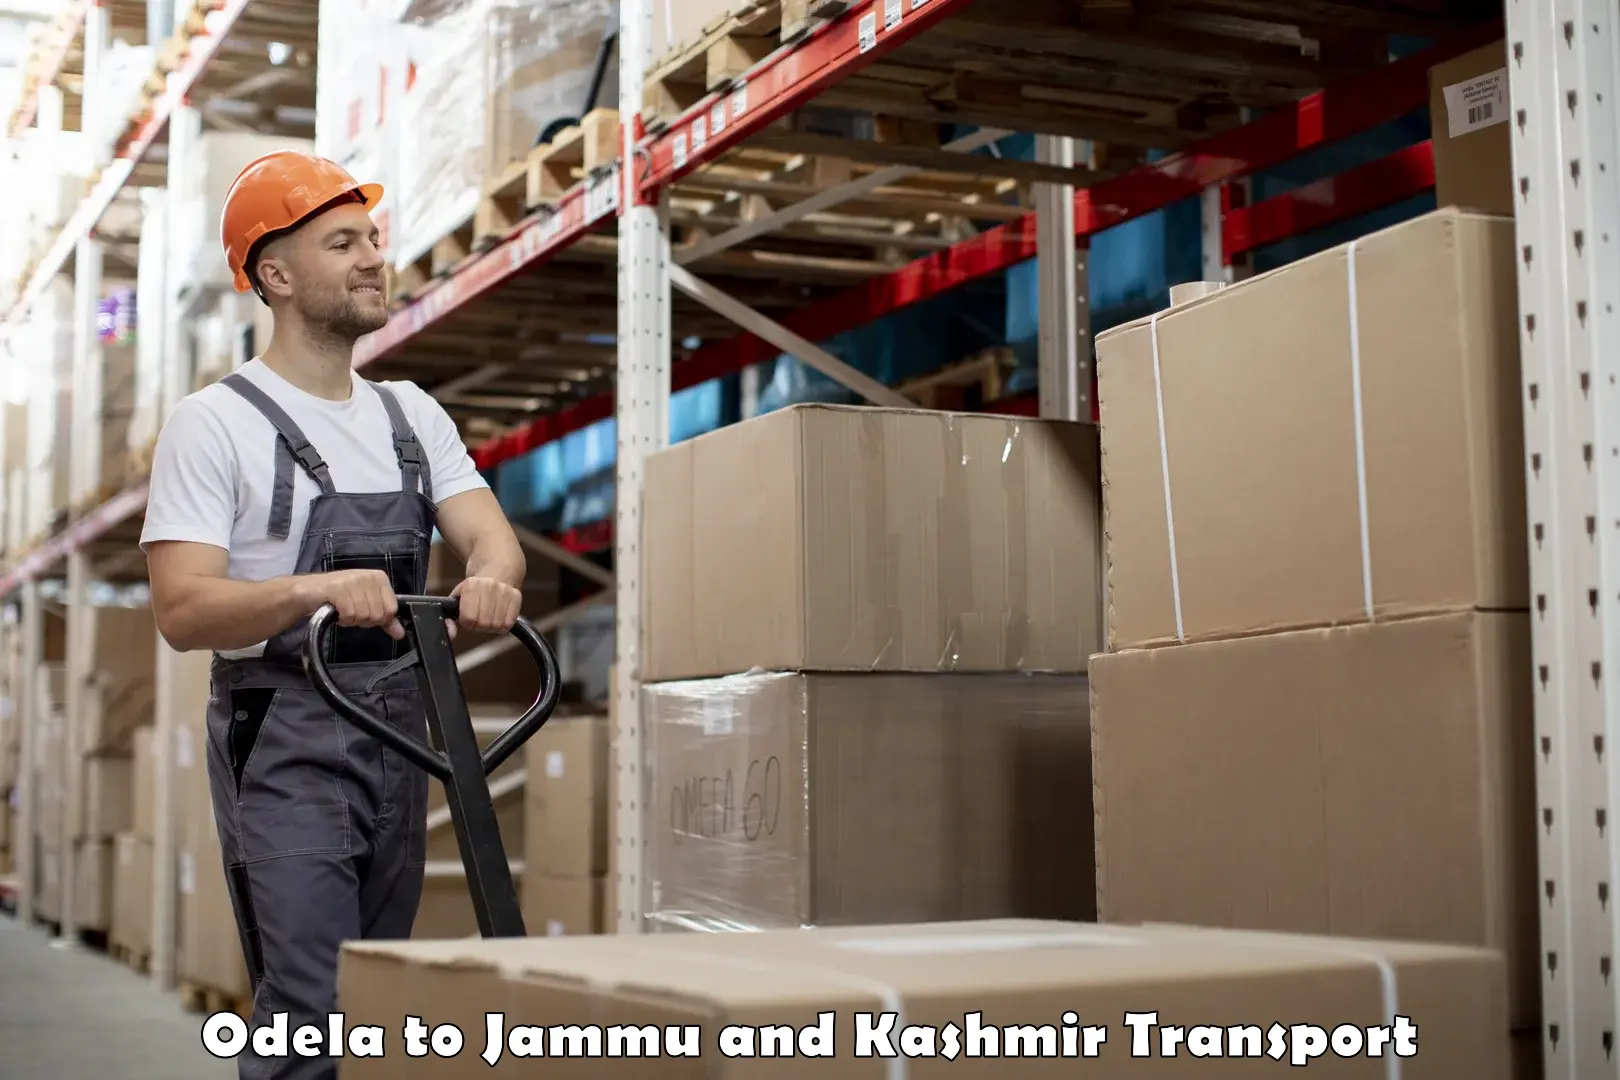 Online transport service Odela to University of Jammu